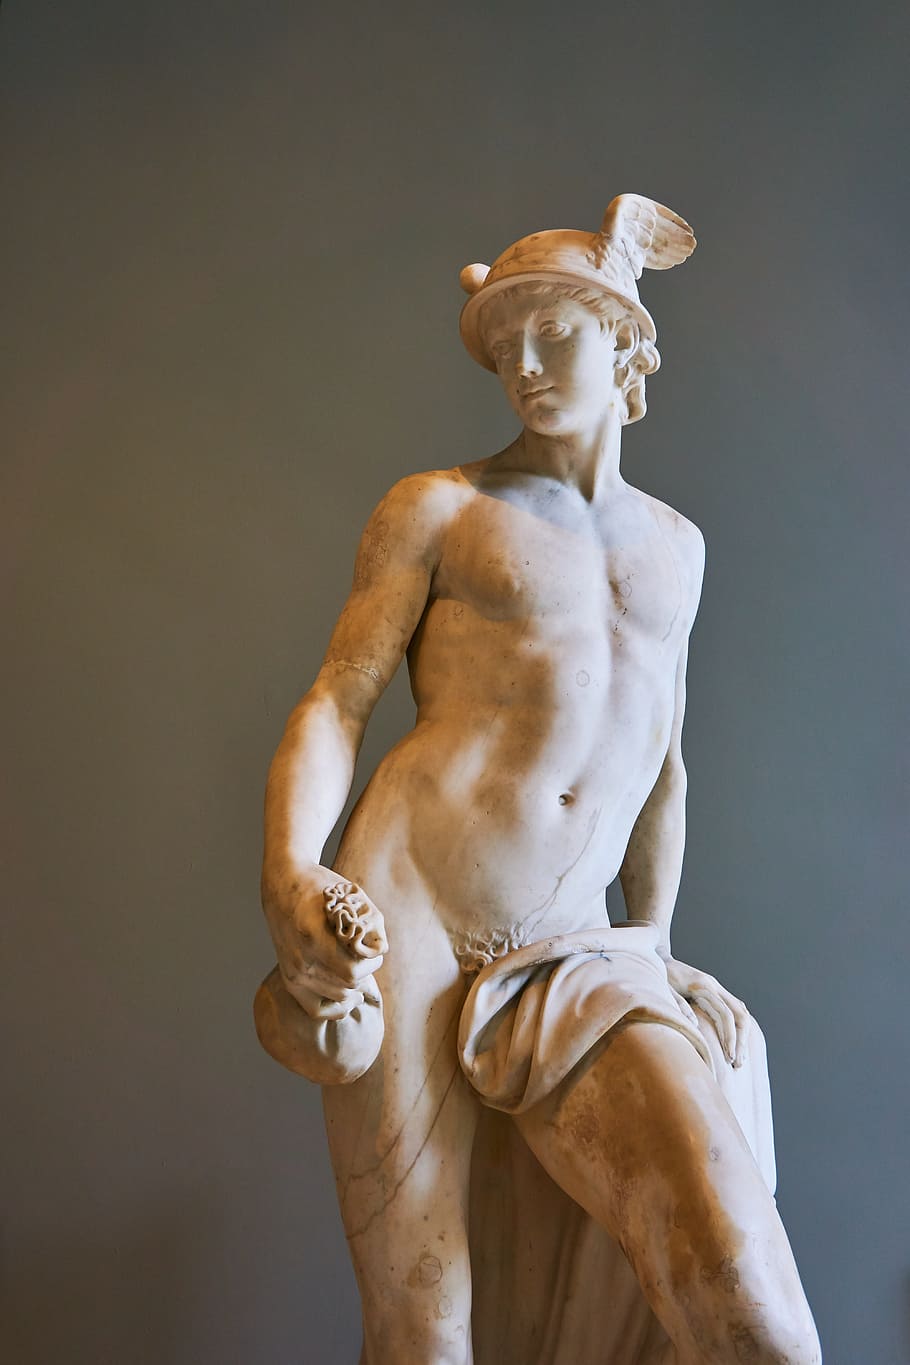 male Greek God statue near gray wall, louvre, paris, museum, france, HD wallpaper